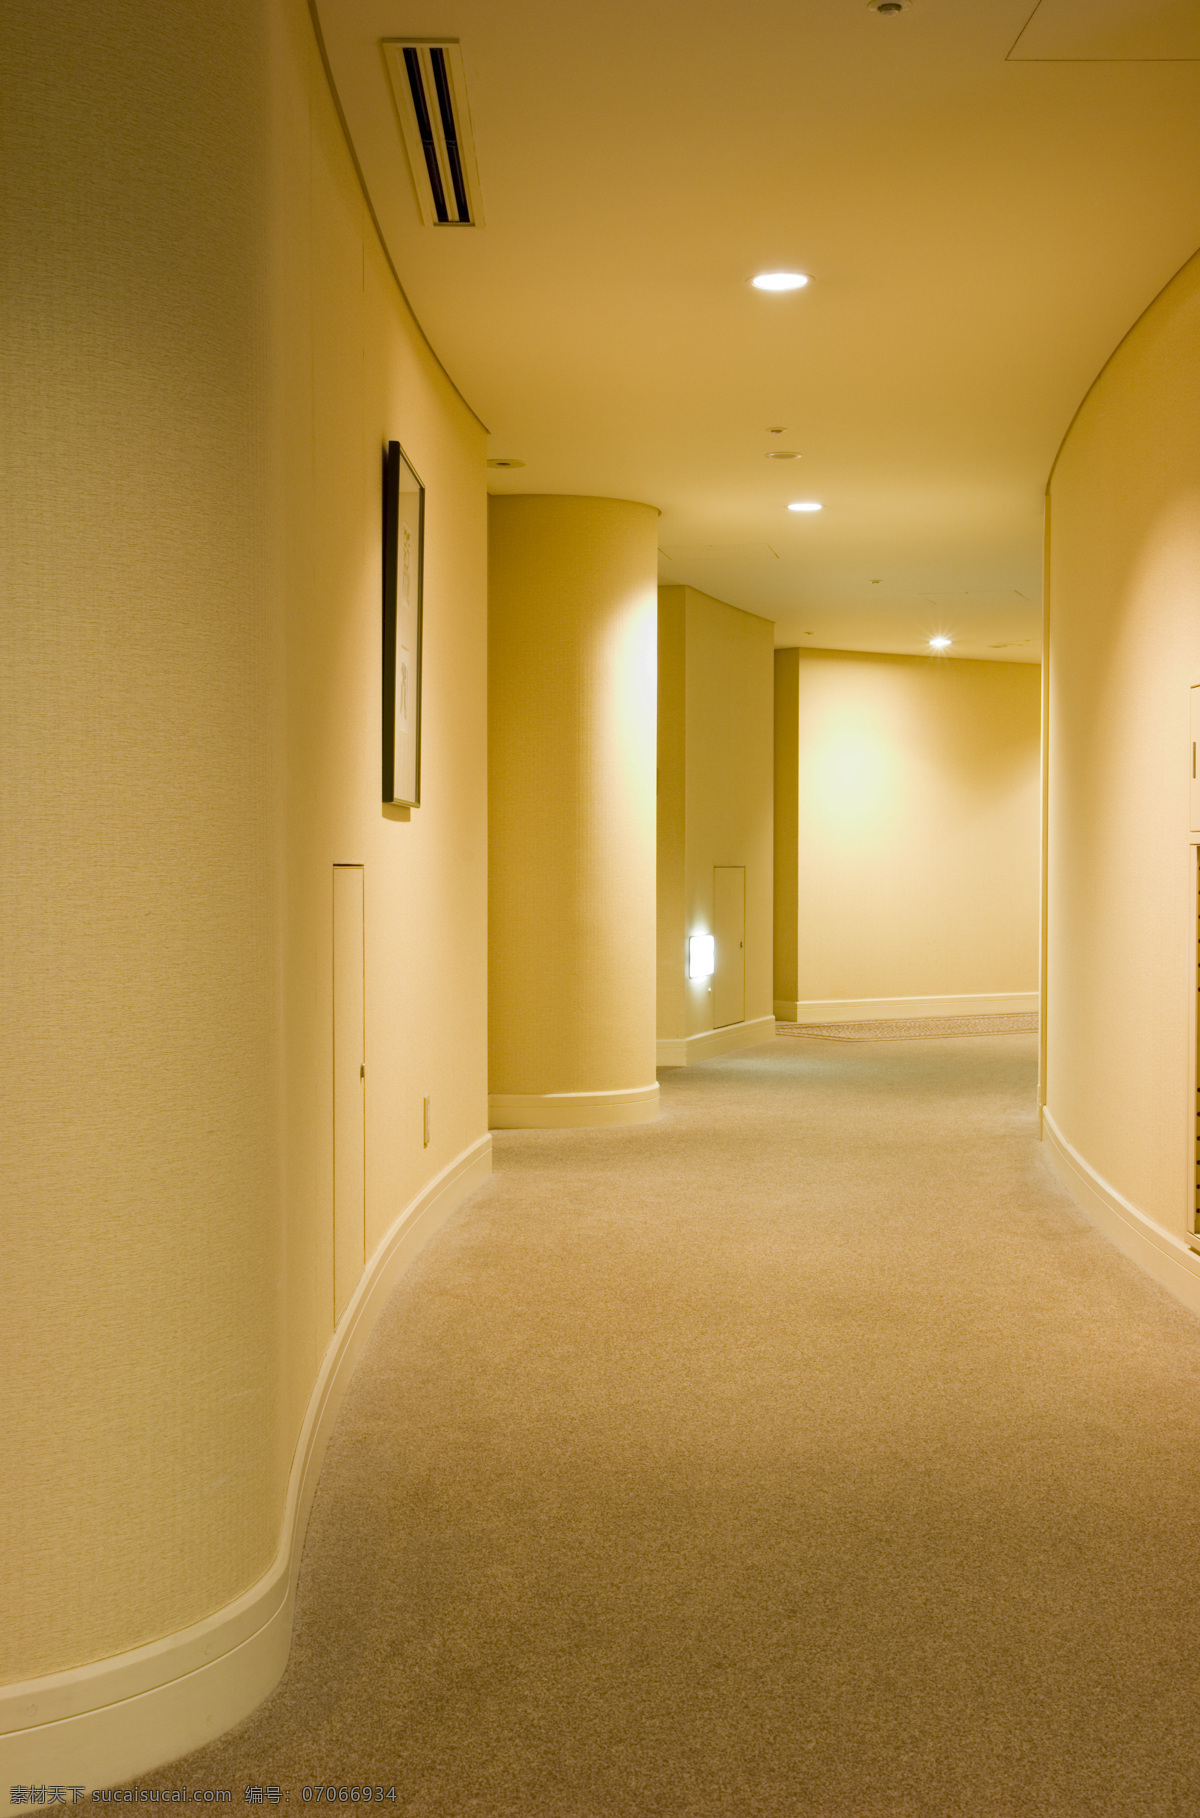 酒店 走廊 灯光 宾馆 豪华 高档 干净 卫生 异形 酒店主题 高清图片 室内设计 环境家居